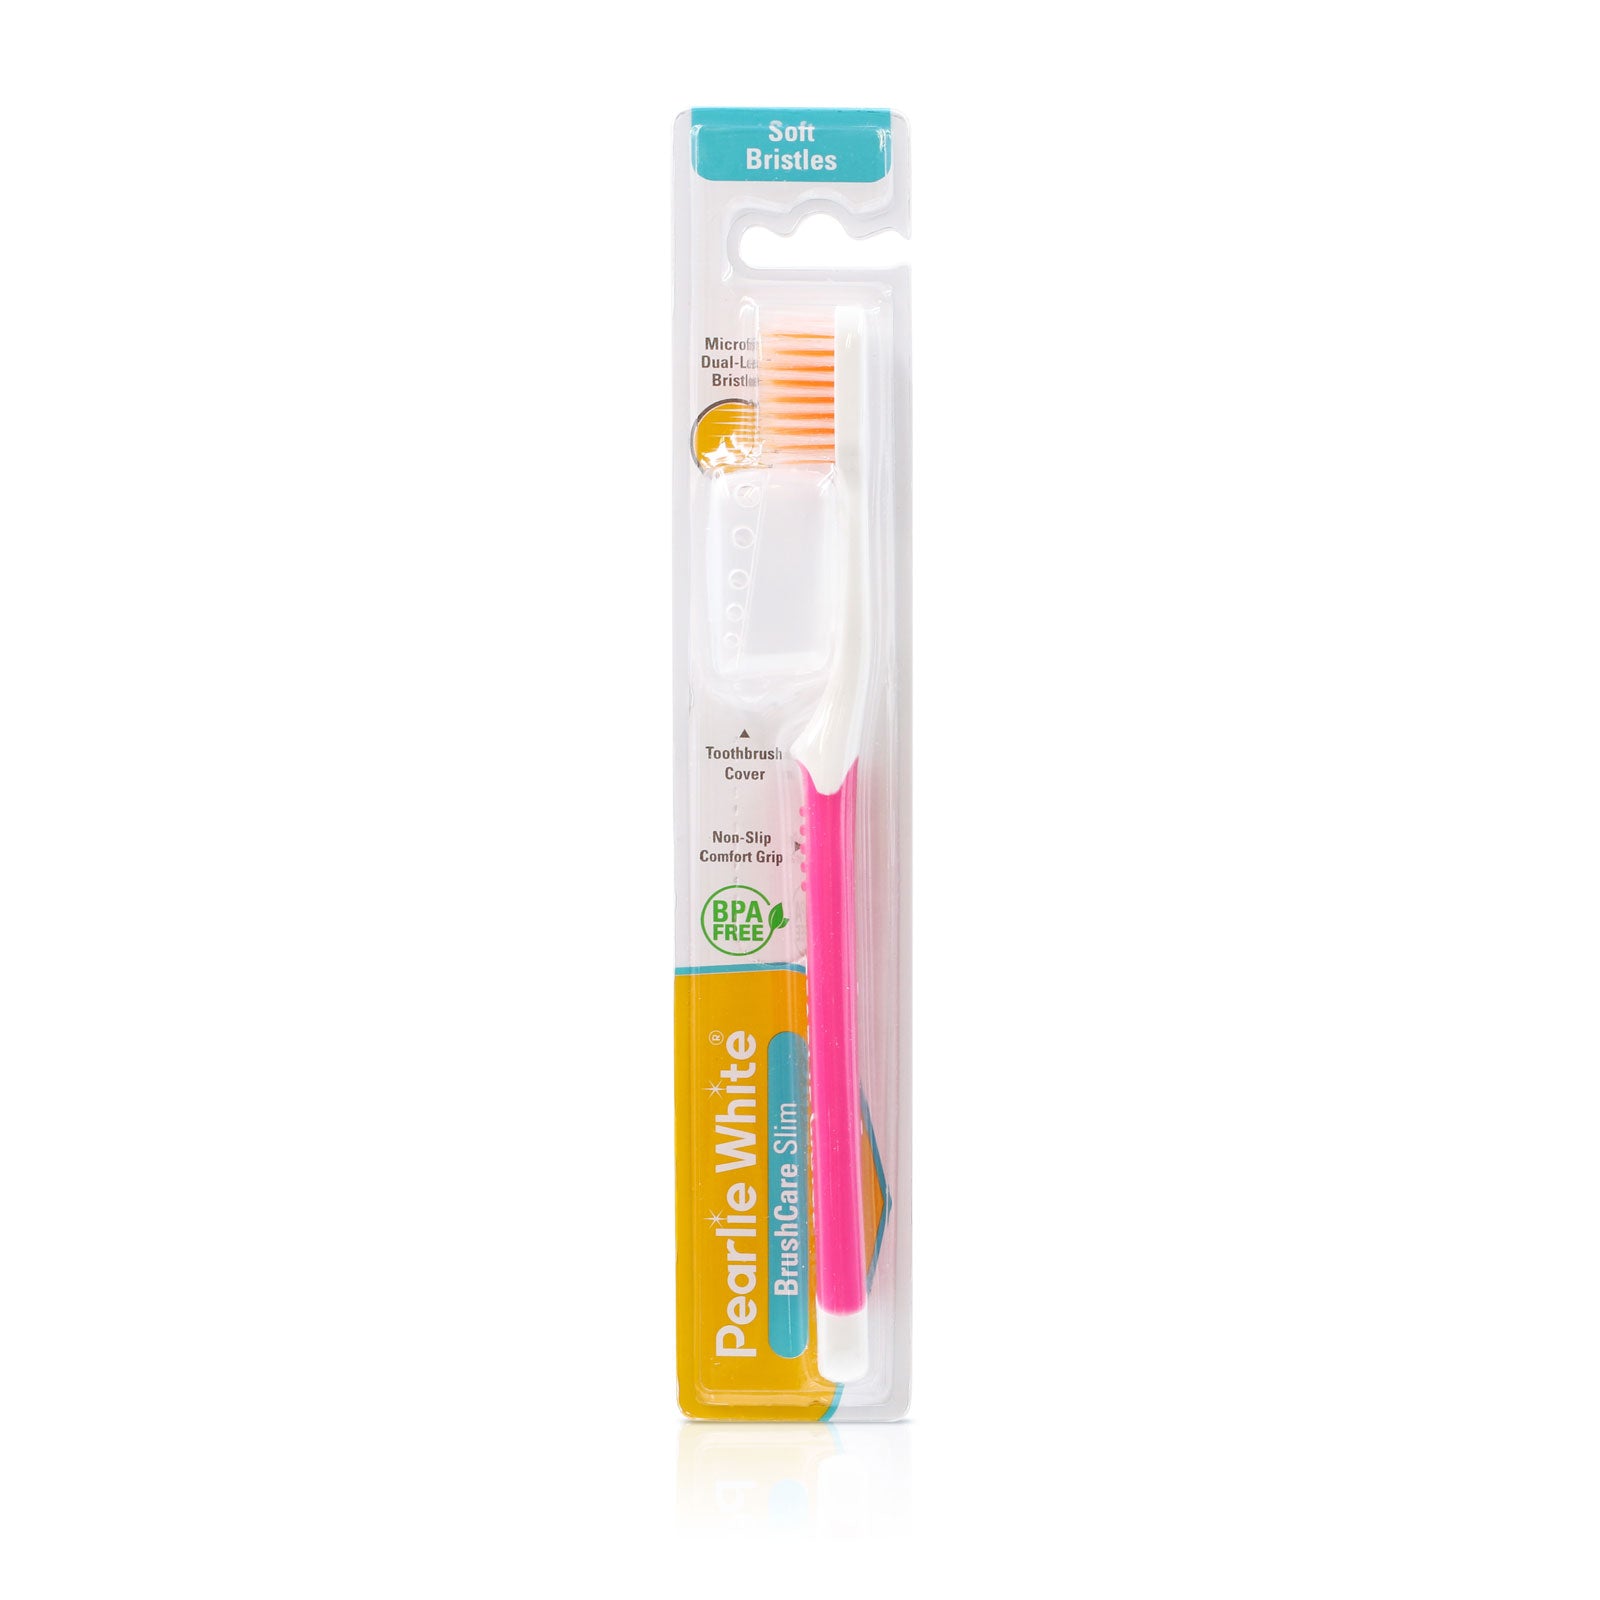 BrushCare Slim Soft Toothbrush